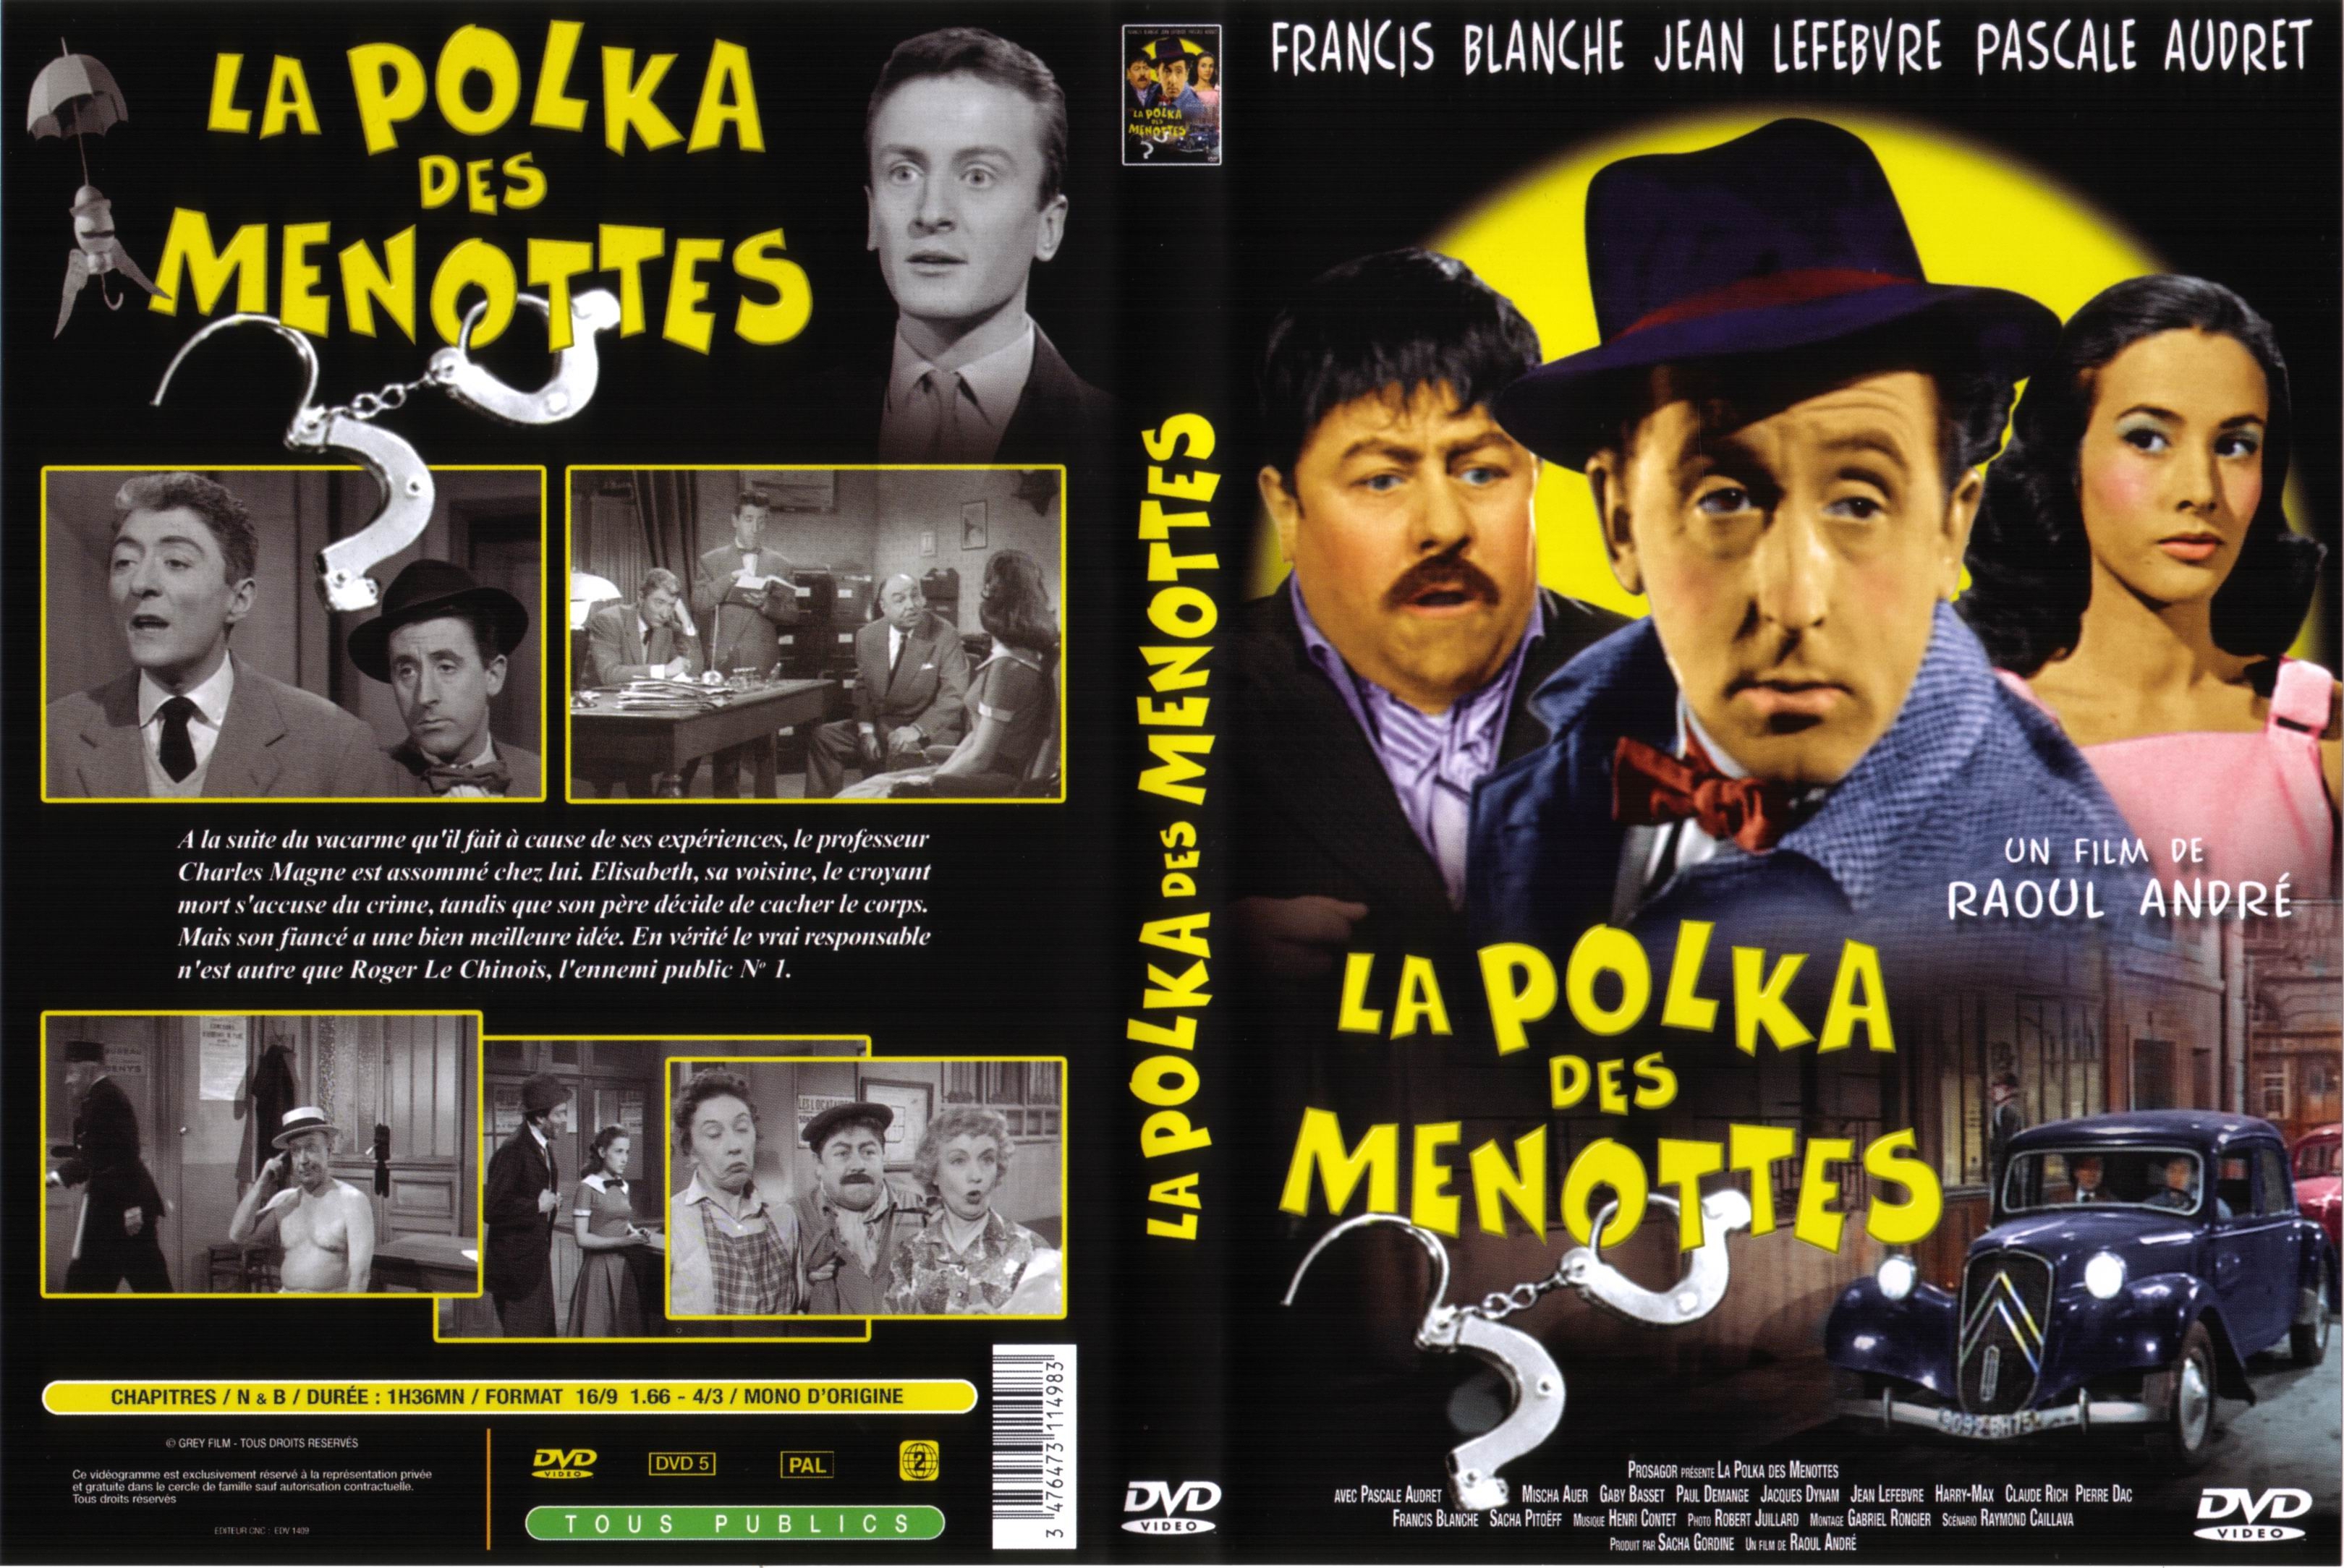 Jaquette DVD La polka des menottes